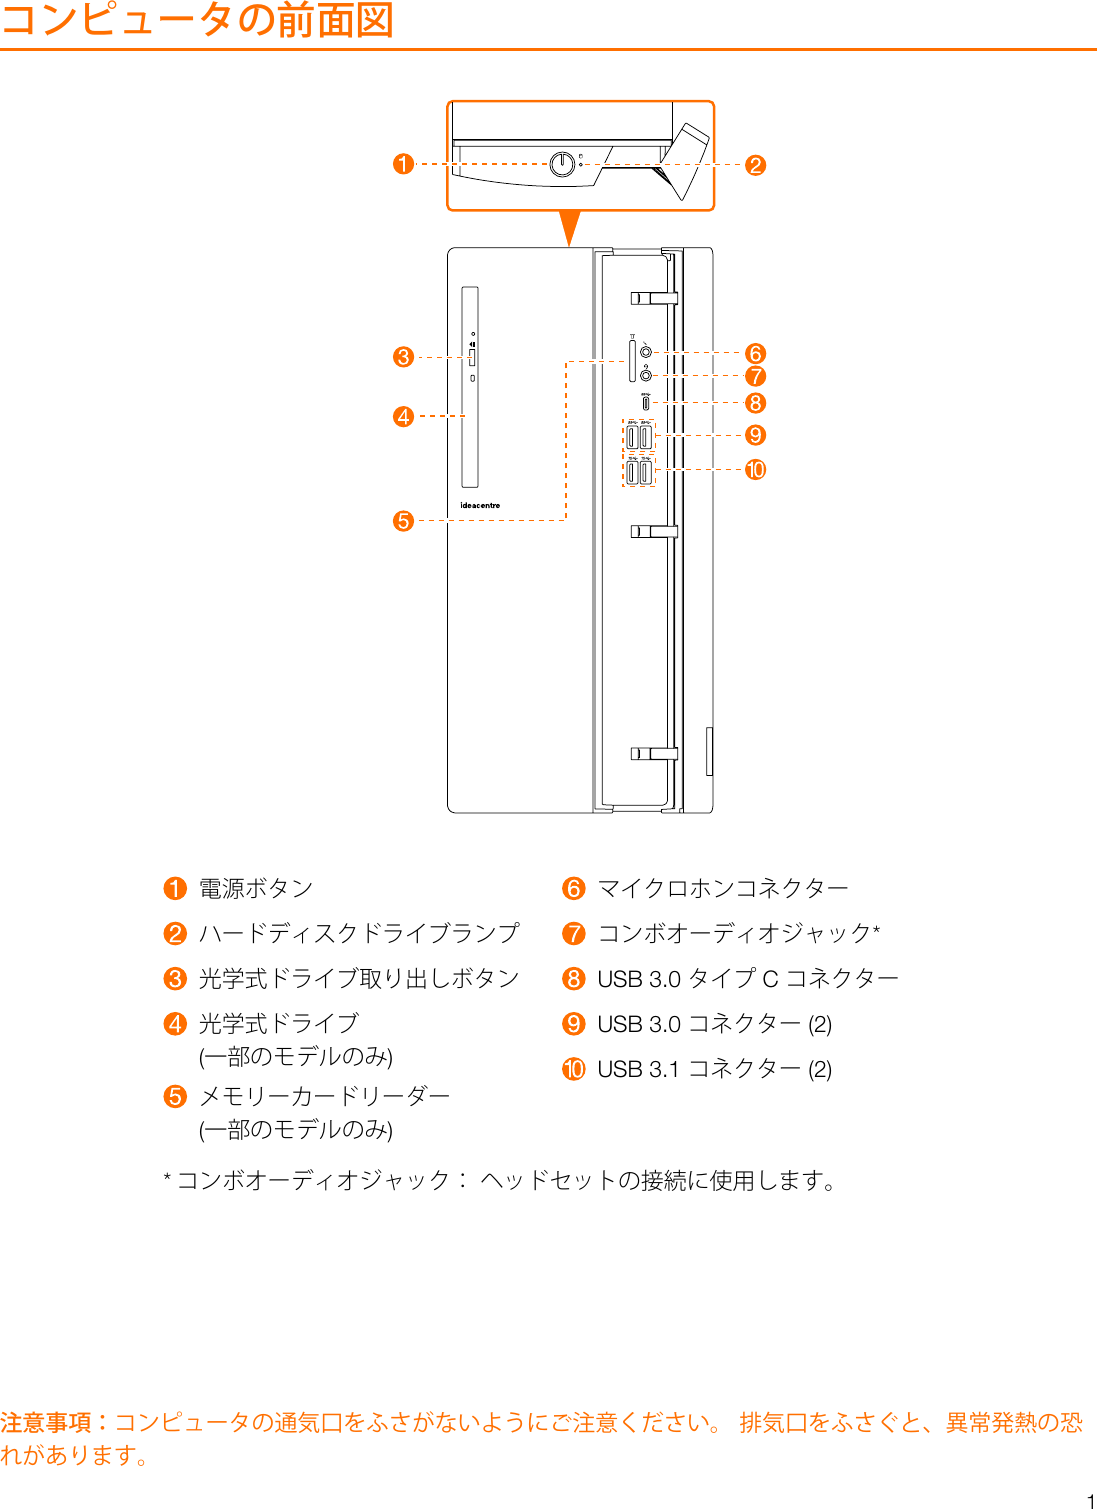 Page 2 of 8 - Lenovo  ユーザー・ガイド 510A-15ICB Desktop (ideacentre) - Type 90HV 510 510a Ug V1.0 Jp 20180509